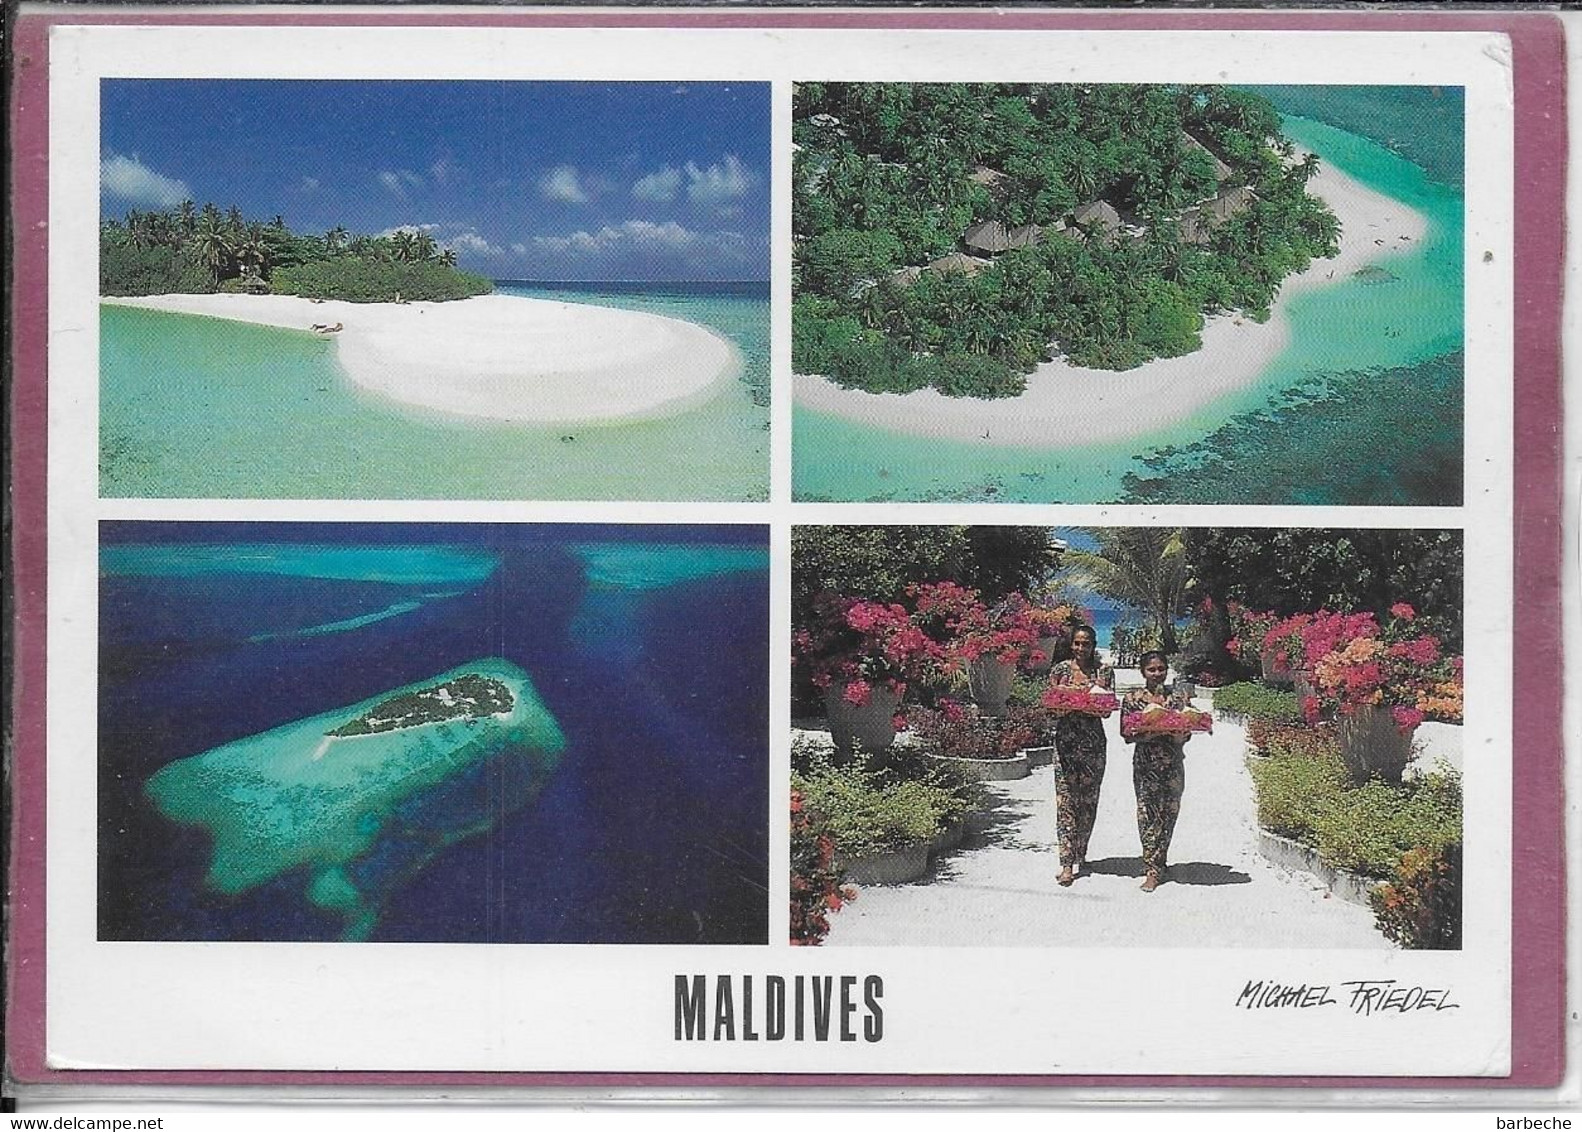 MALDIVES - Embudu - Maldive